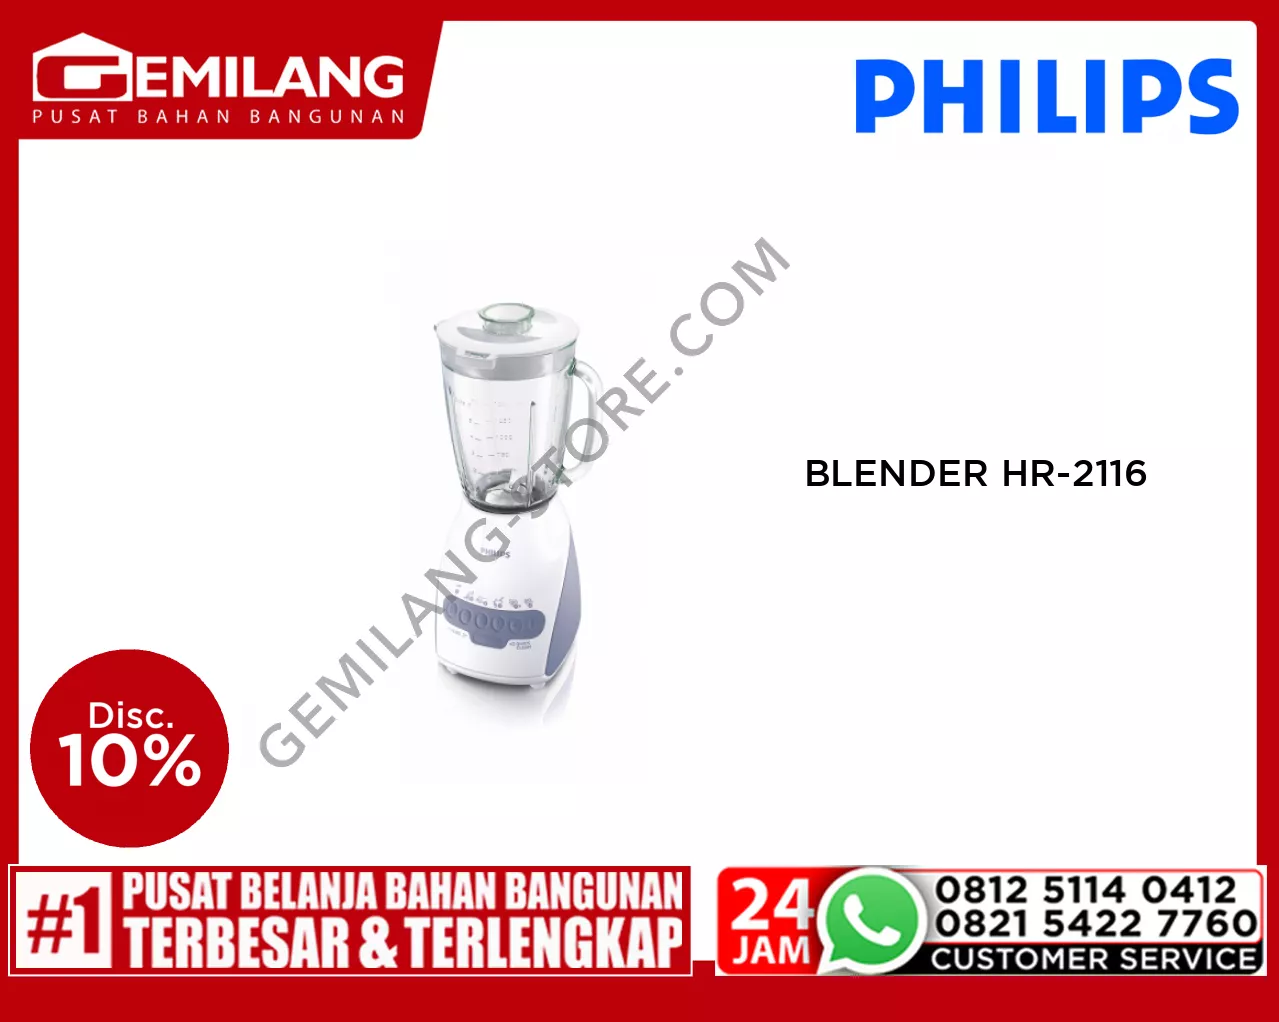 PHILIPS BLENDER HR-2116